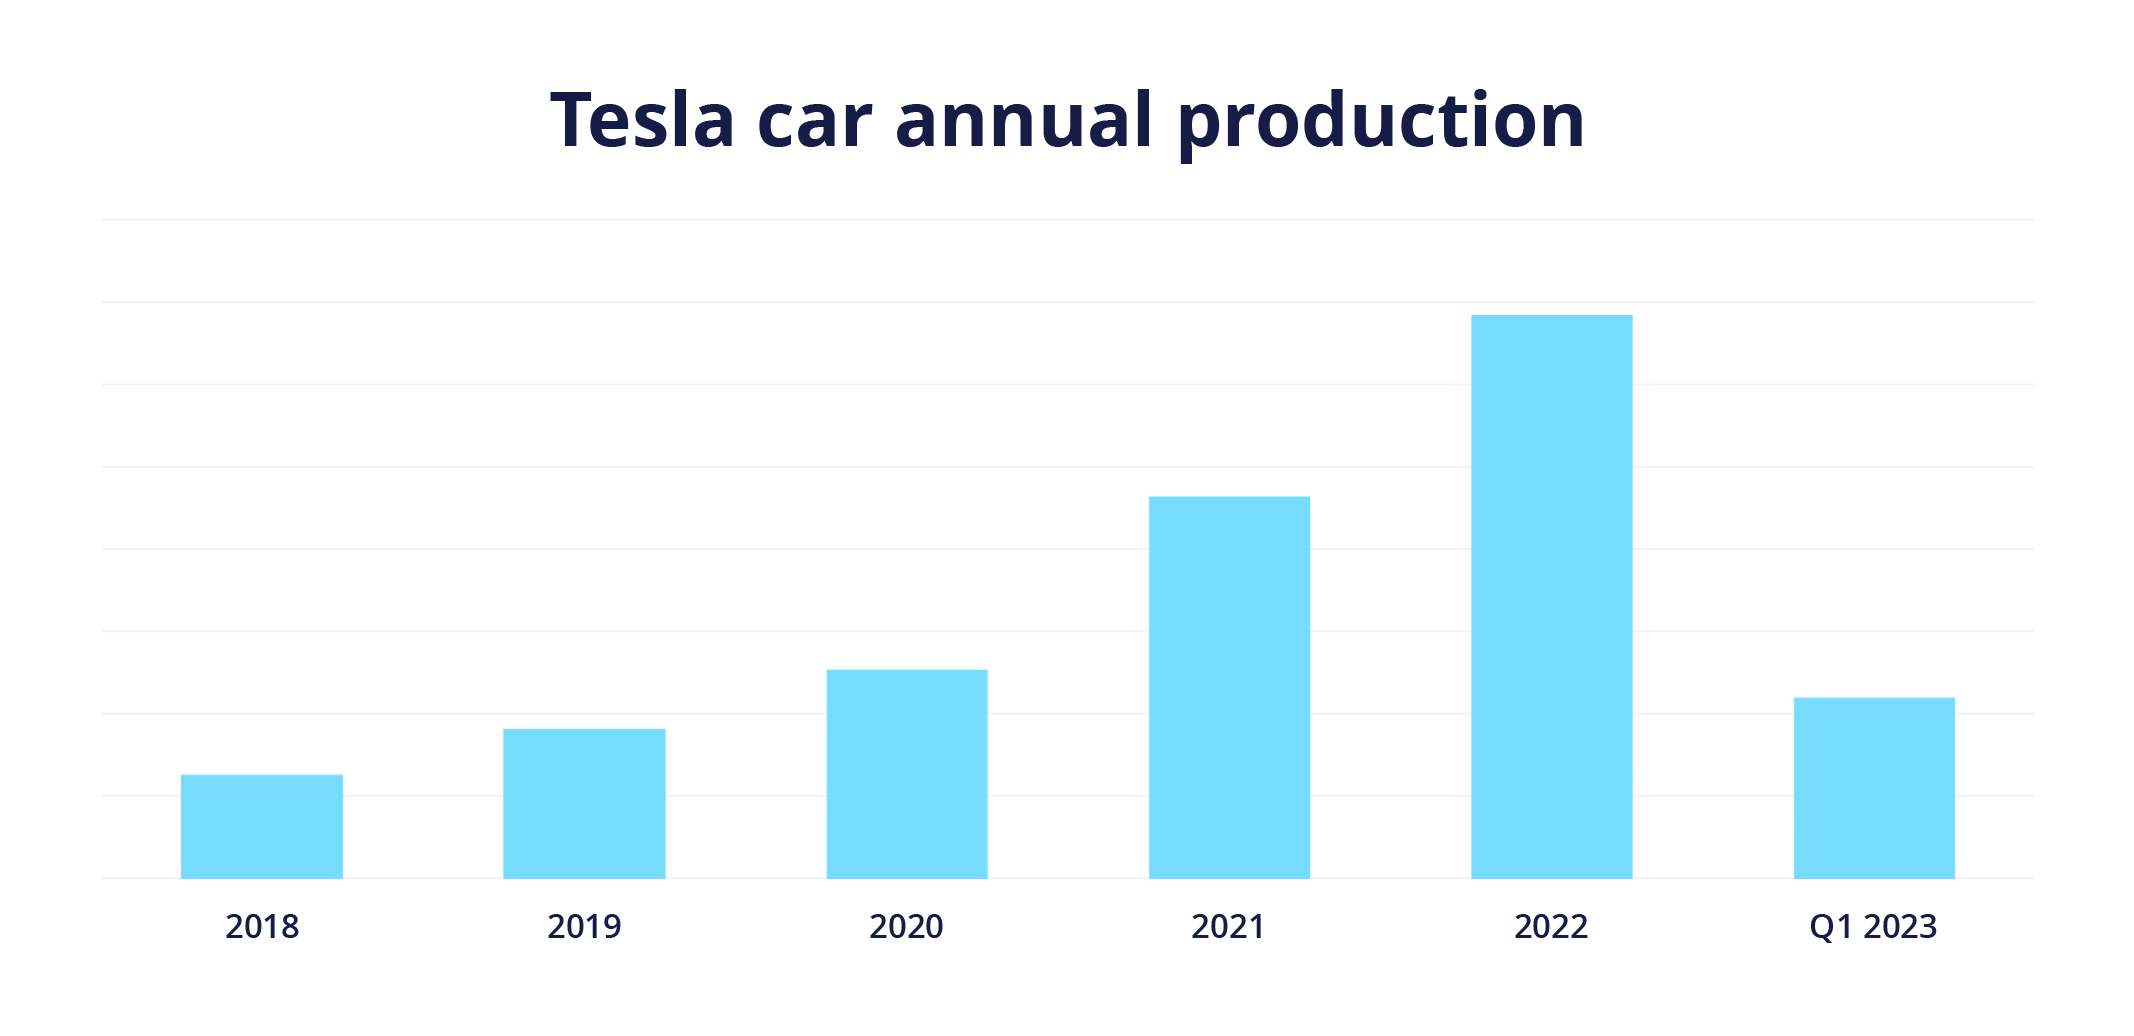 Producción anual de automóviles de Tesla de 2018 a 2022